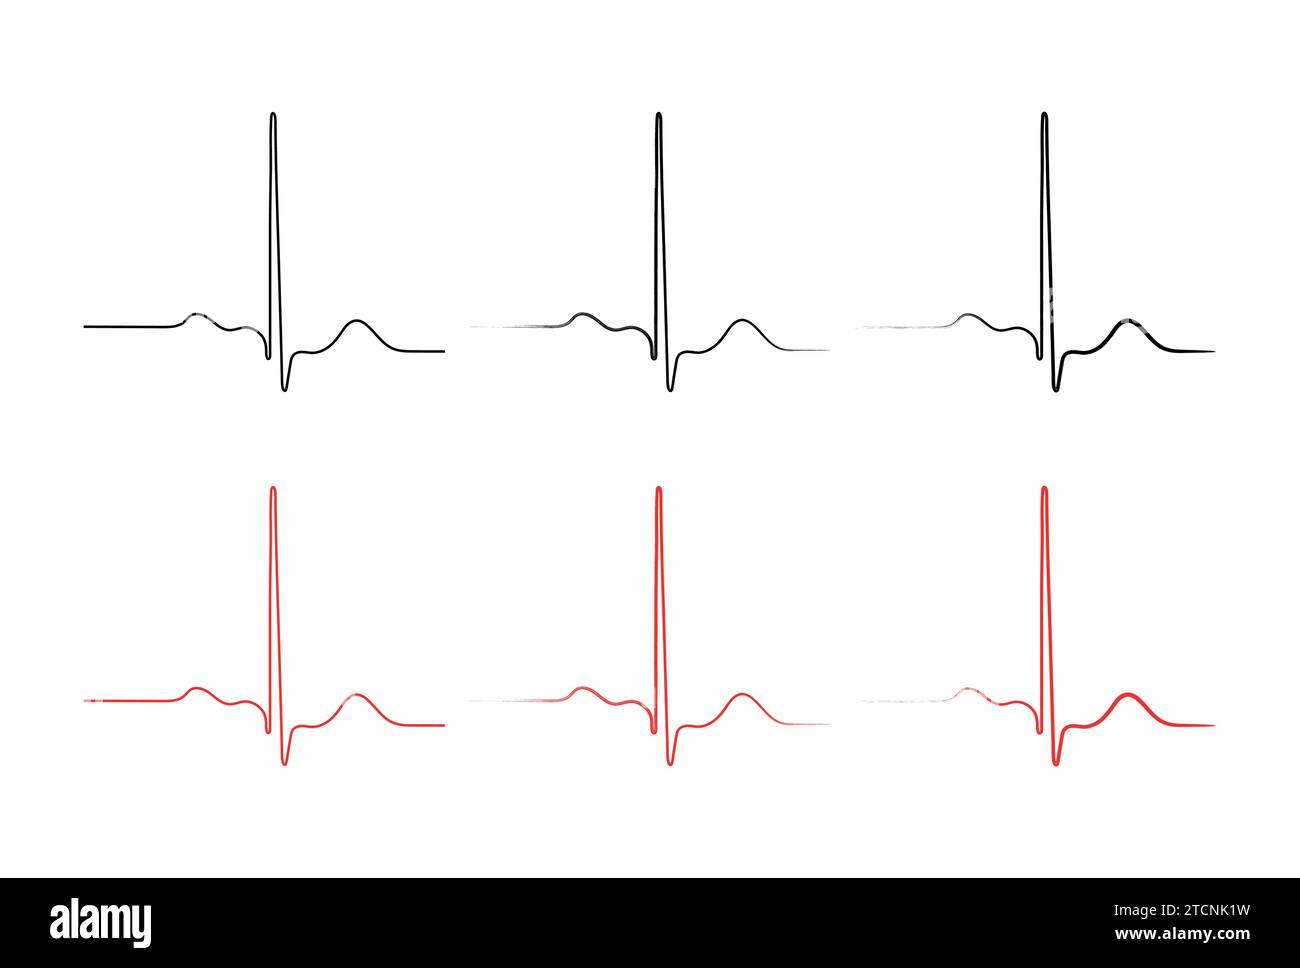 Ripolarizzazione ventricolare, ciclo cardiaco, ECG cardiaco nel ritmo sinusale normale, intervallo QT dell'ECG. Illustrazione Vettoriale